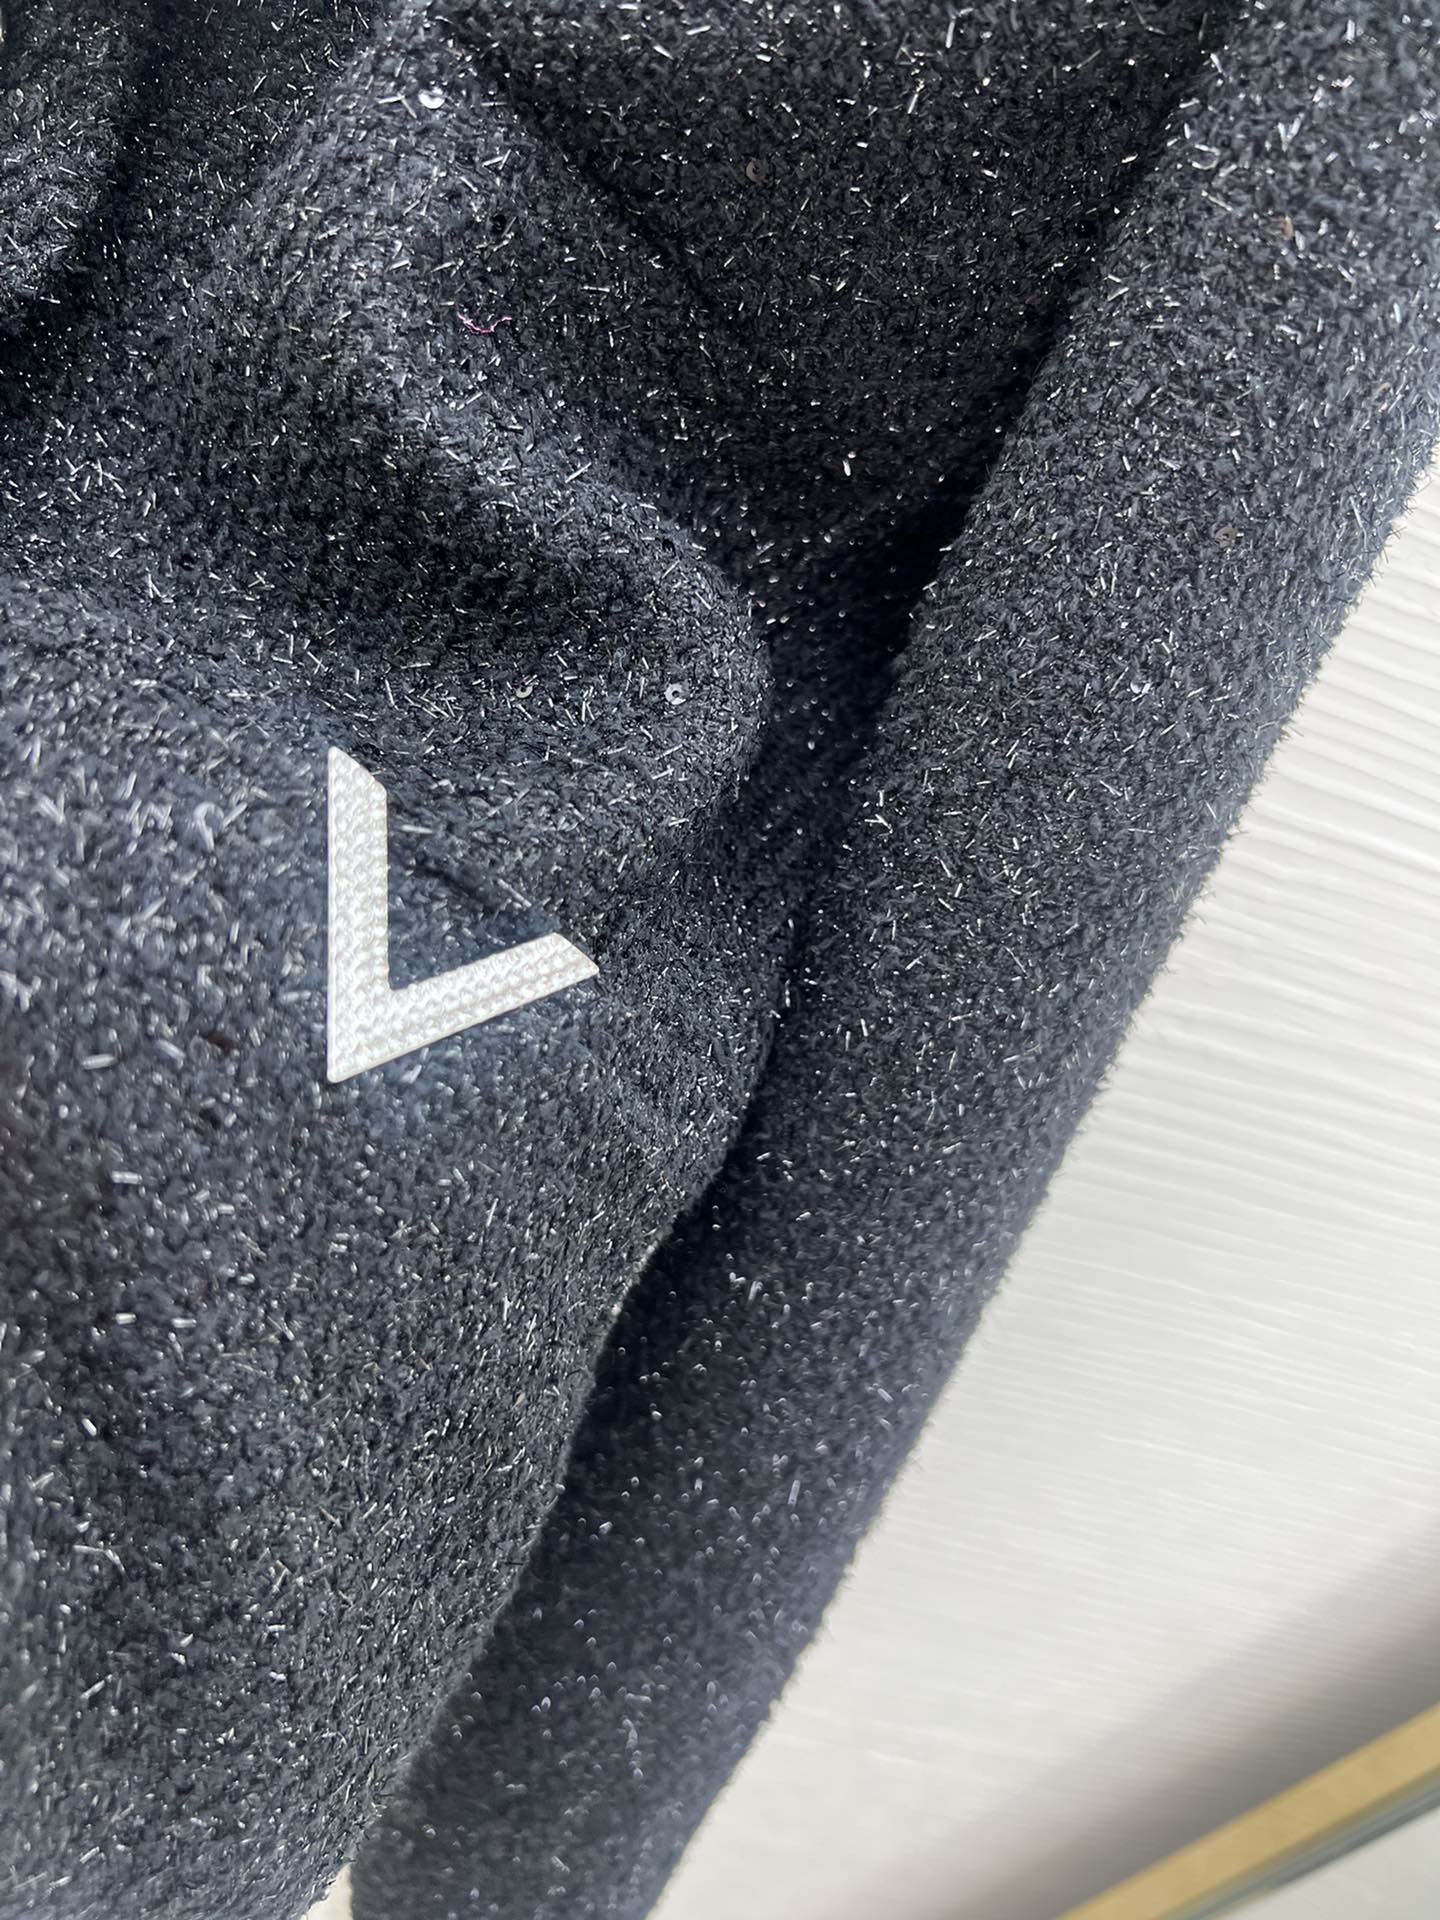 上新Ｖ23新款春夏外套定制定染面料珠片刺绣毛呢外套定织面料原版里面是有银色丝线和亮片经典版型袖领口袖口拼